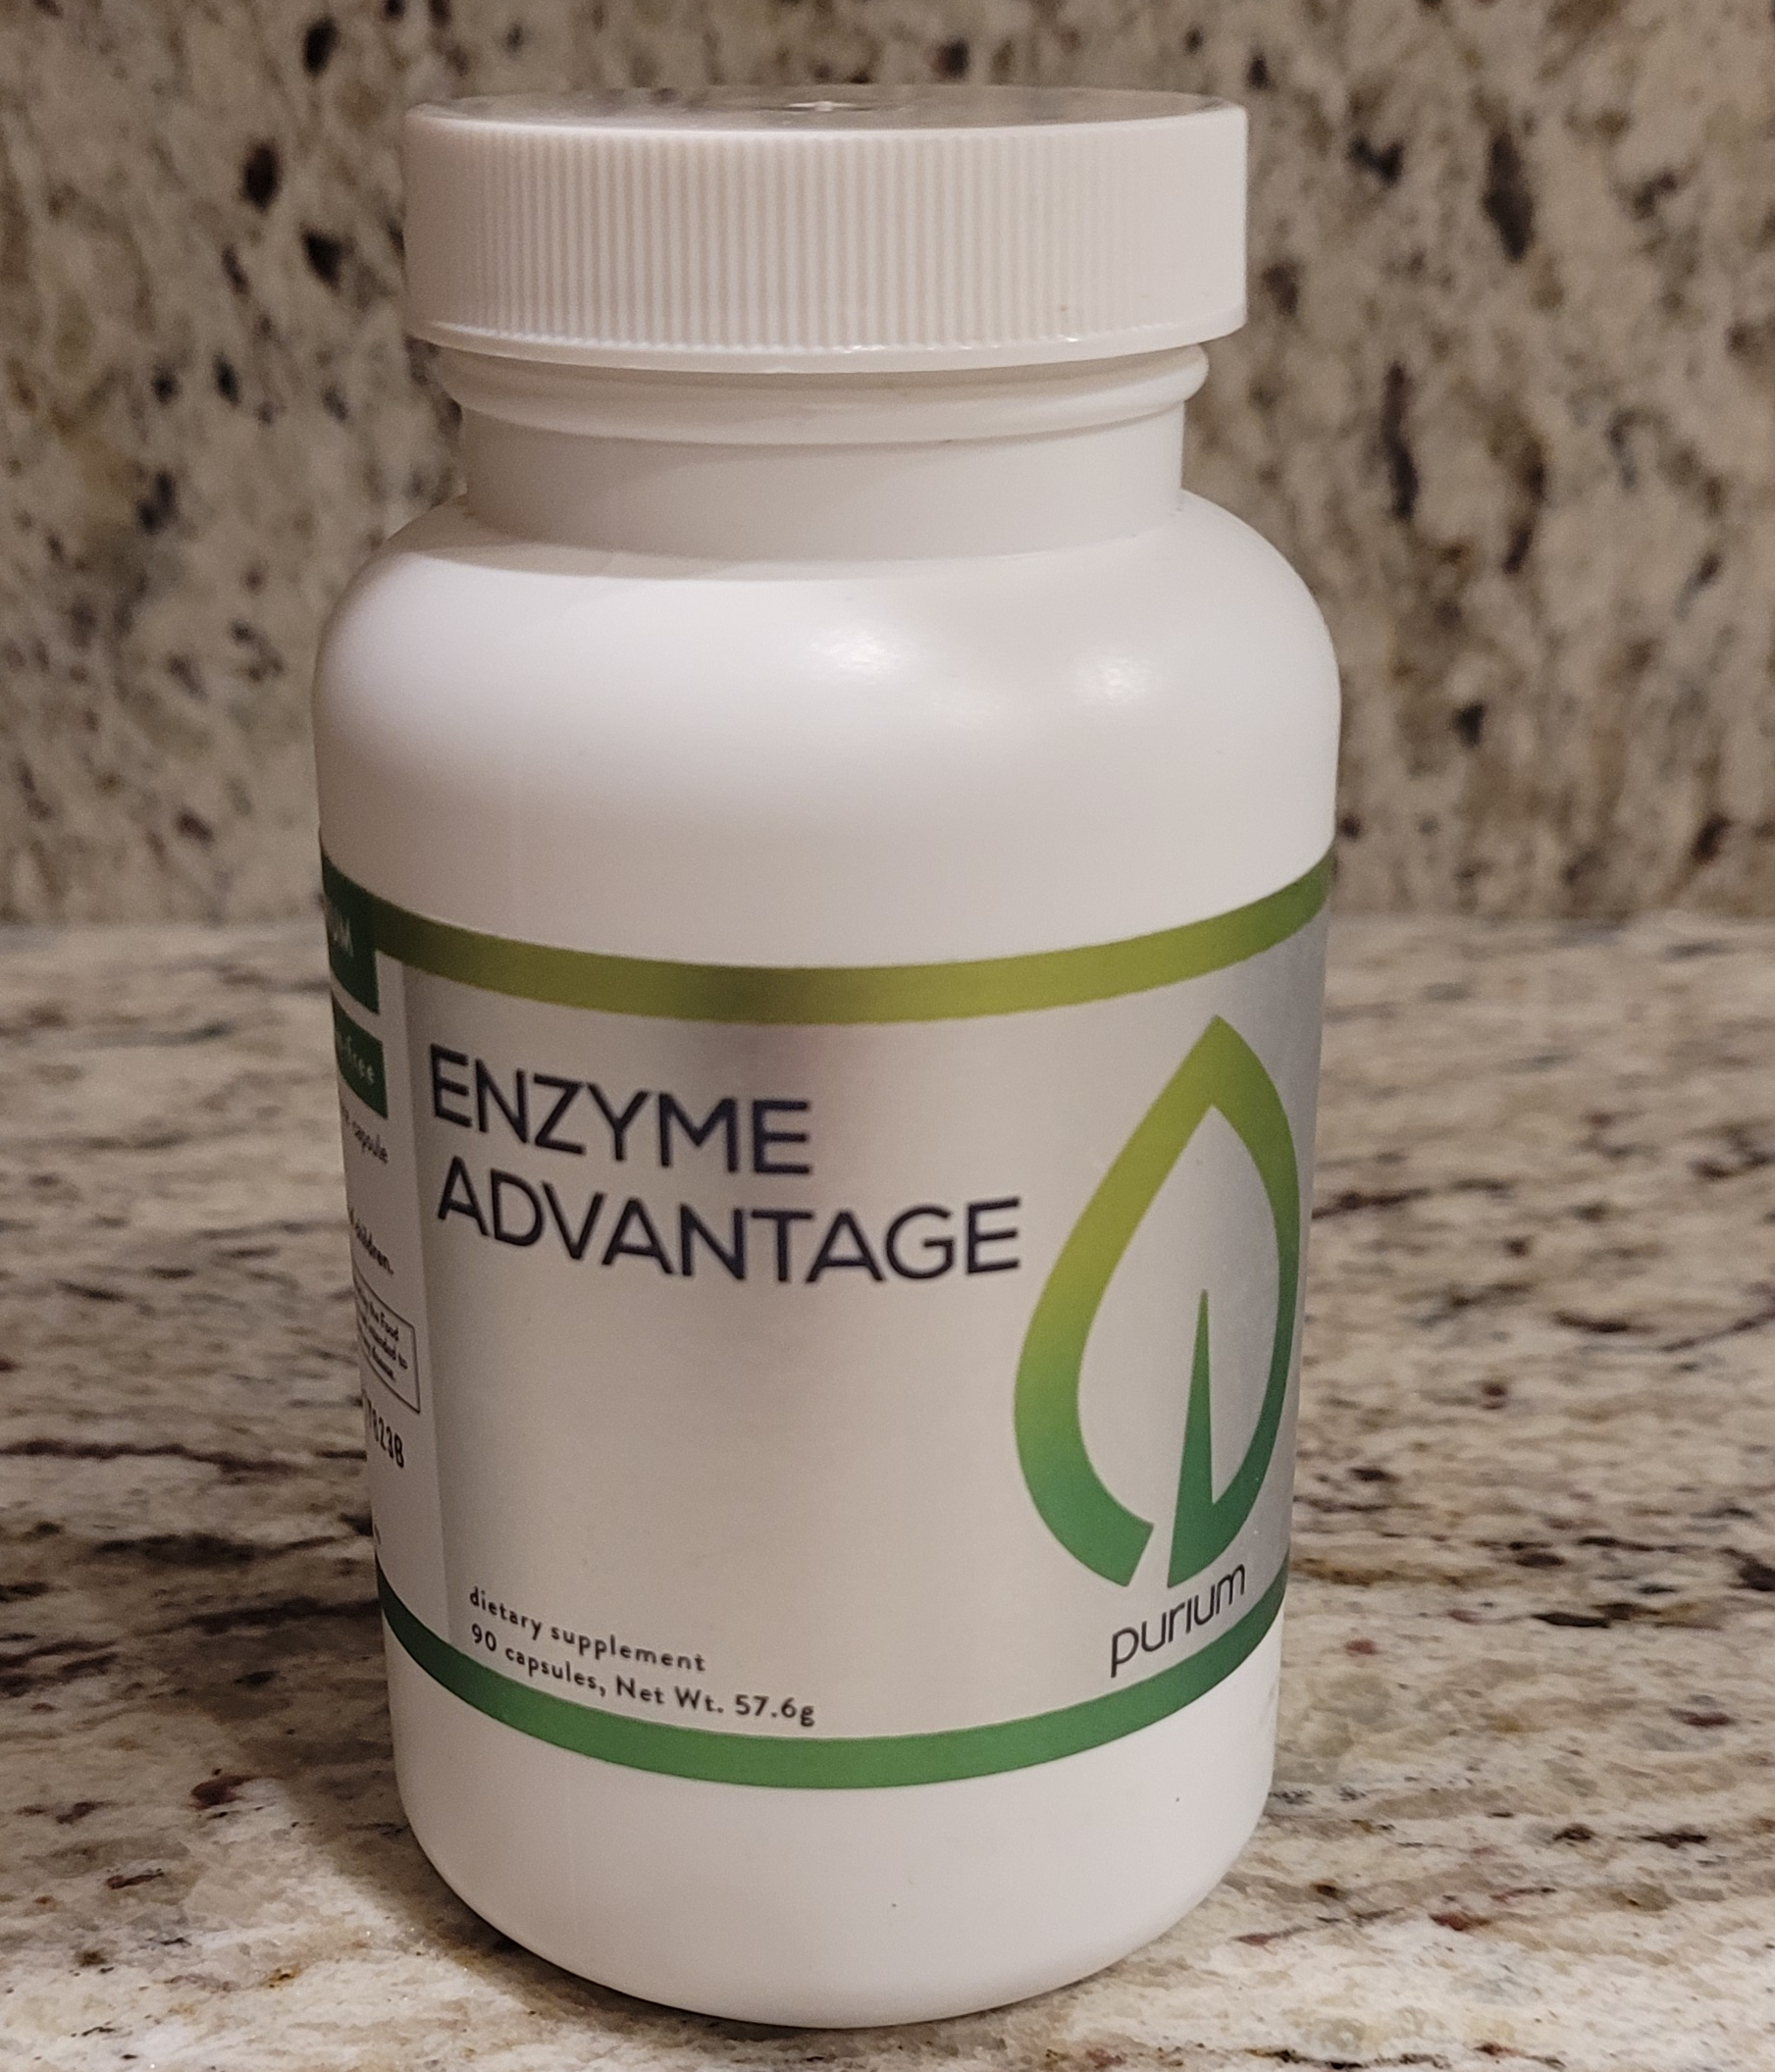 Enzyme Advantage